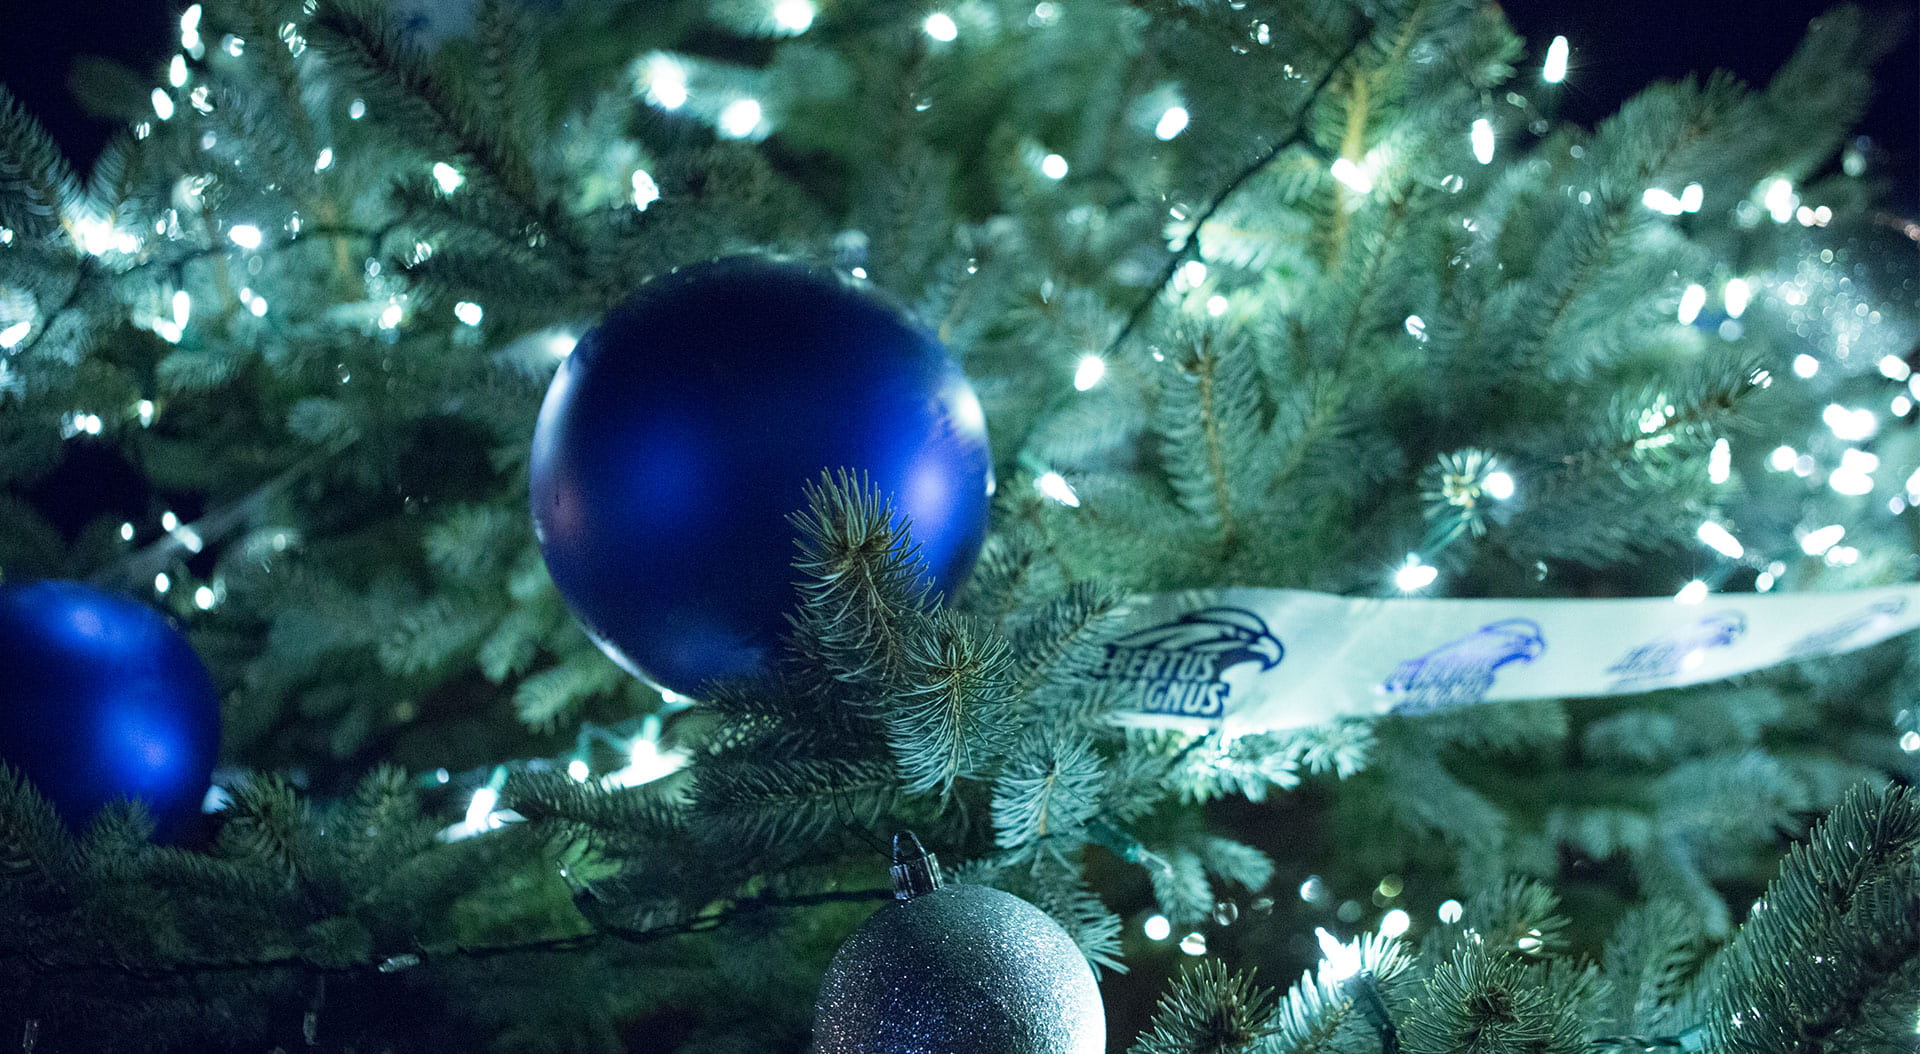 Albertus Christmas Tree Lighting